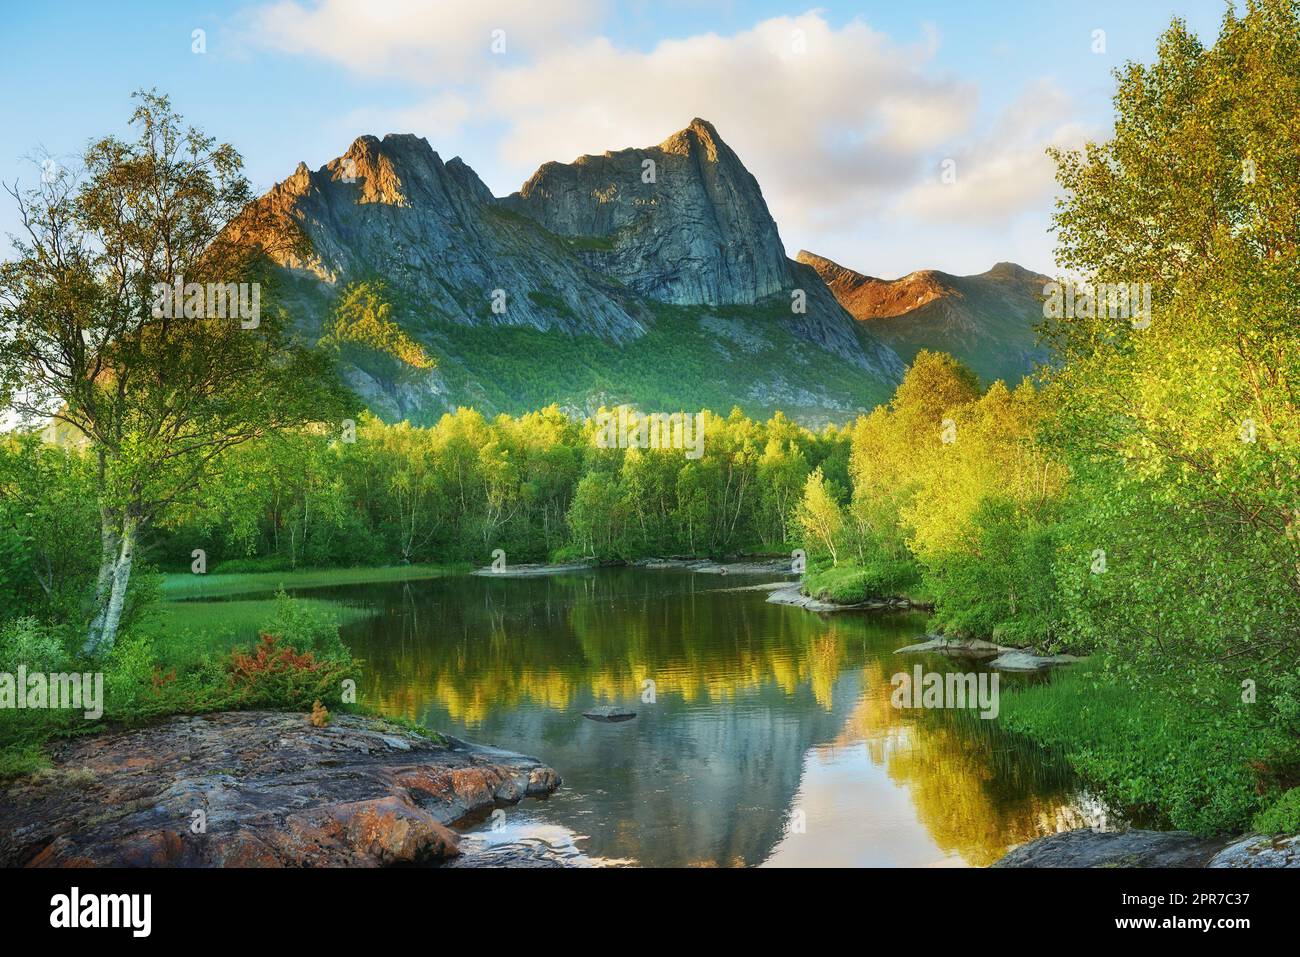 Nature forêt paysage de la montagne Nordland en arrière-plan avec un lac calme et calme entouré par la forêt verte pendant le coucher du soleil. Reflet du ciel d'été dans l'eau et végétation luxuriante Banque D'Images